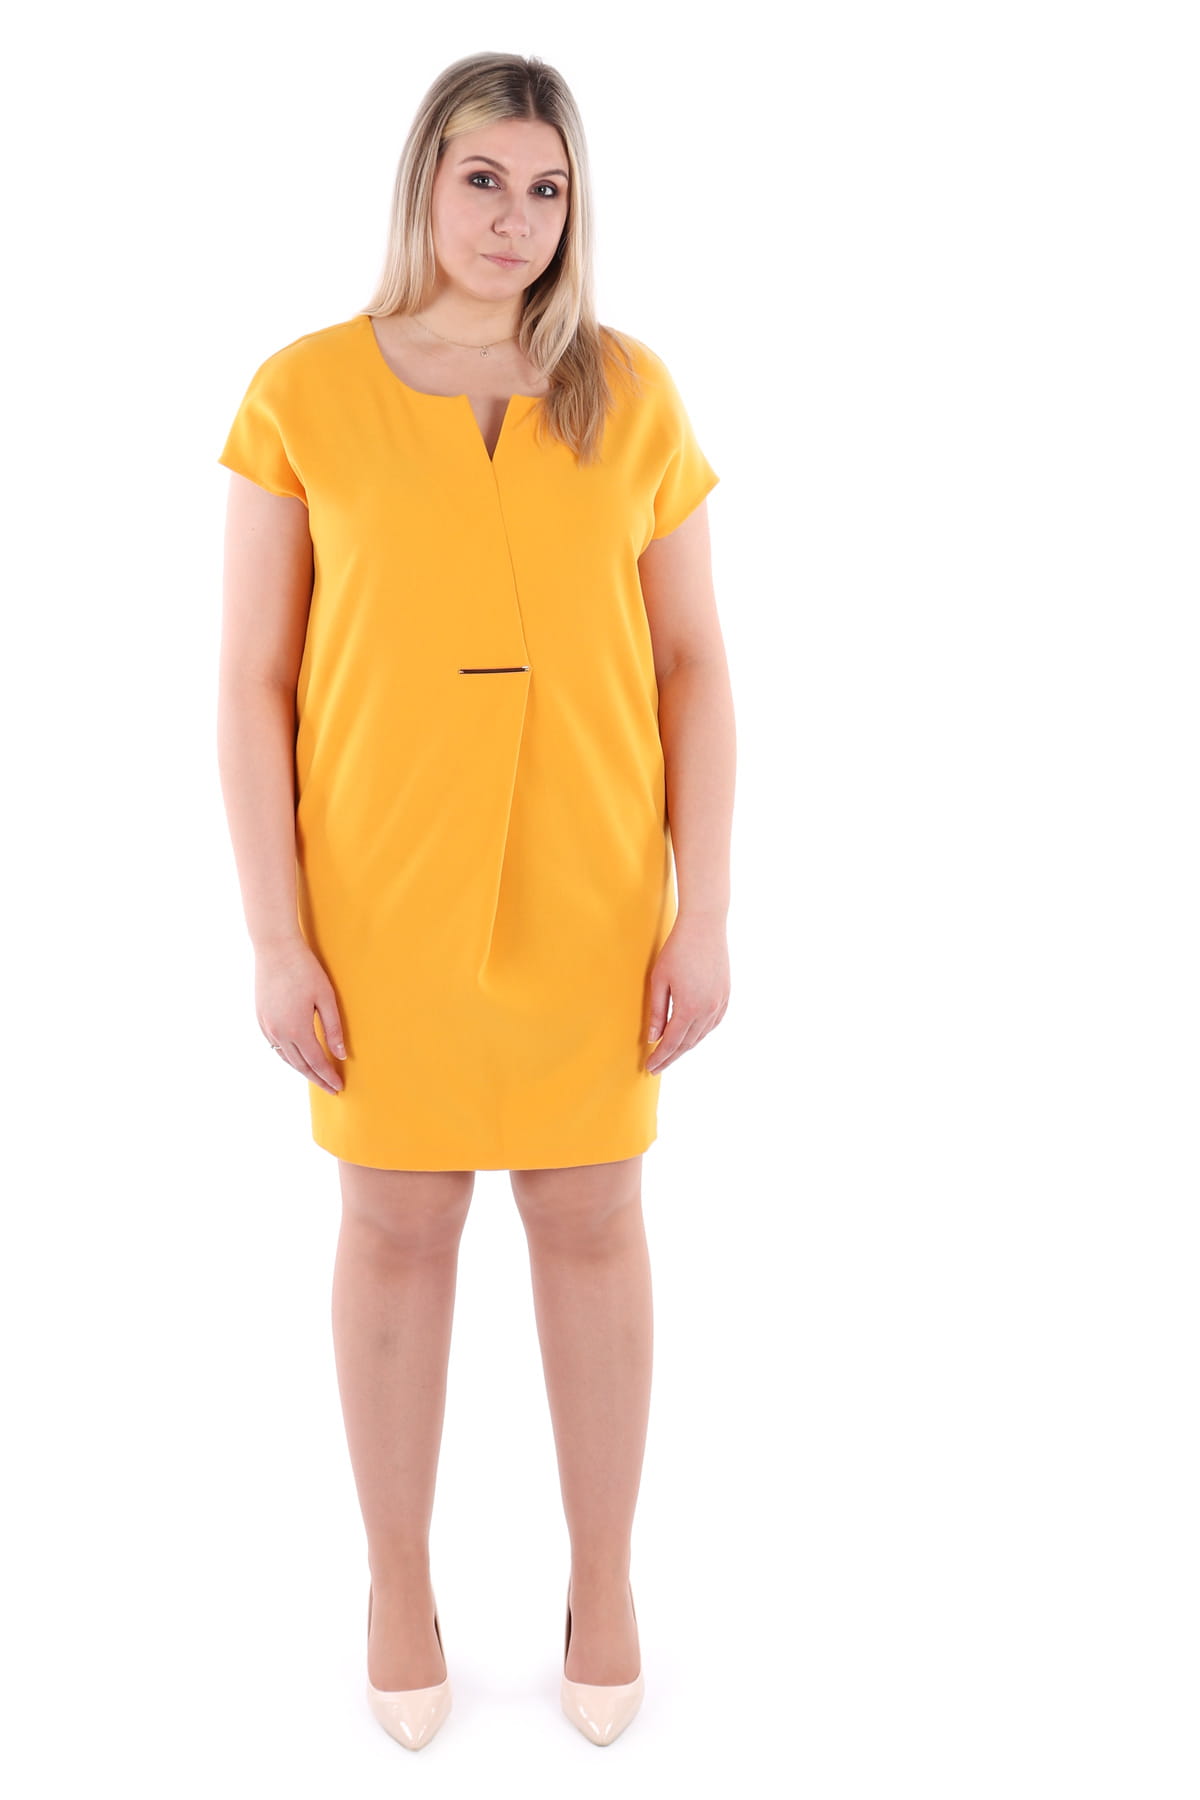 Klasyczna sukienka o prostym kroju, kieszenie, żółta